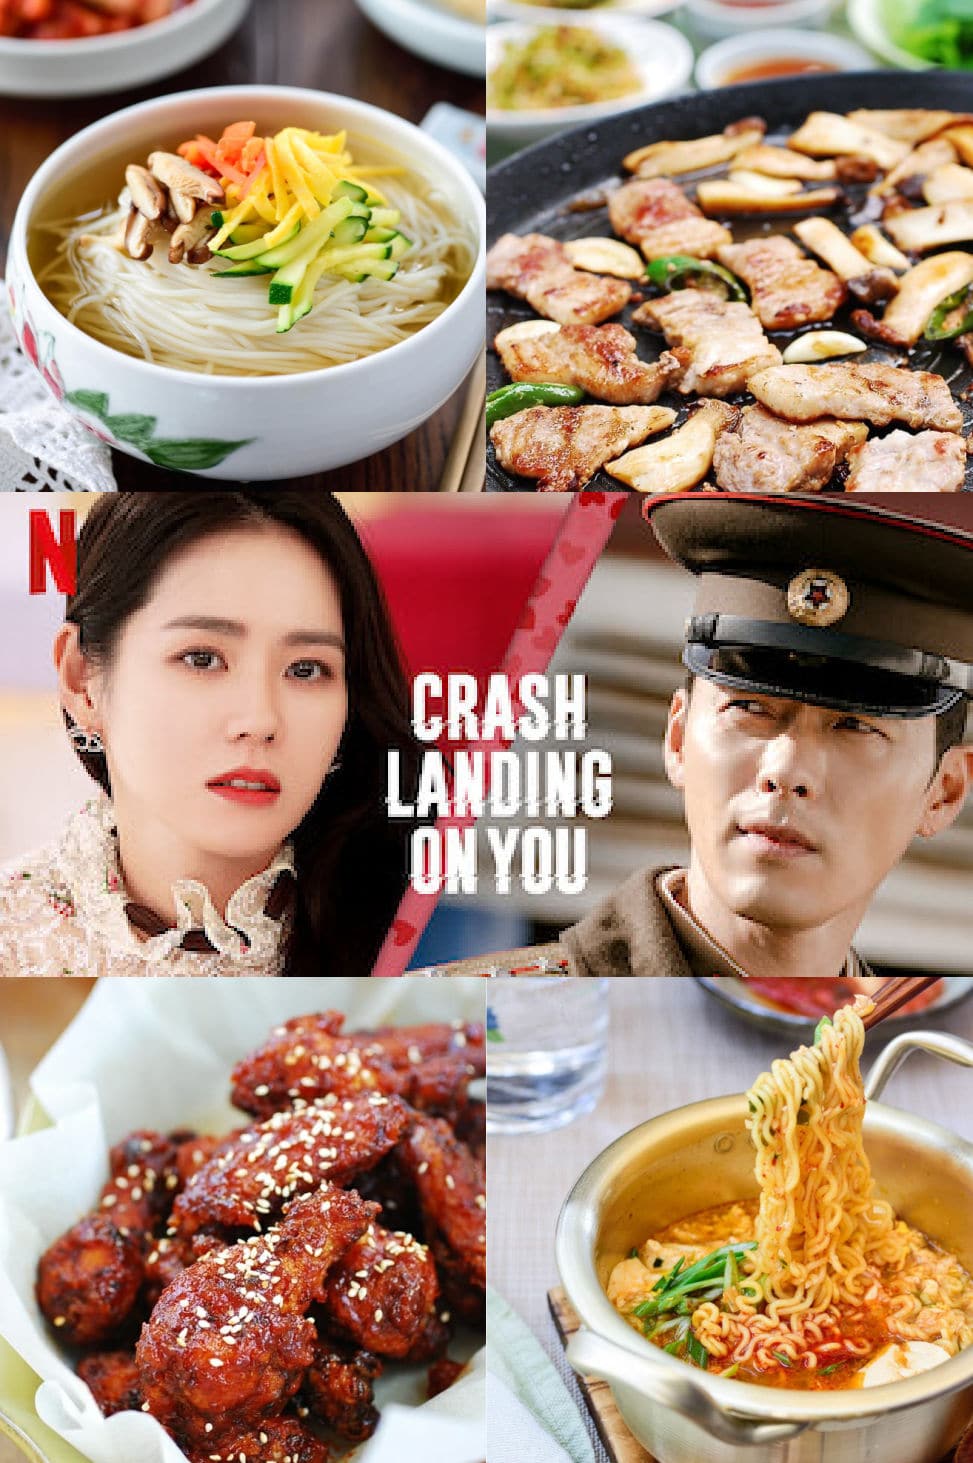 Blank 973 x 1463 - Korean Drama Food - Crash Landing on You